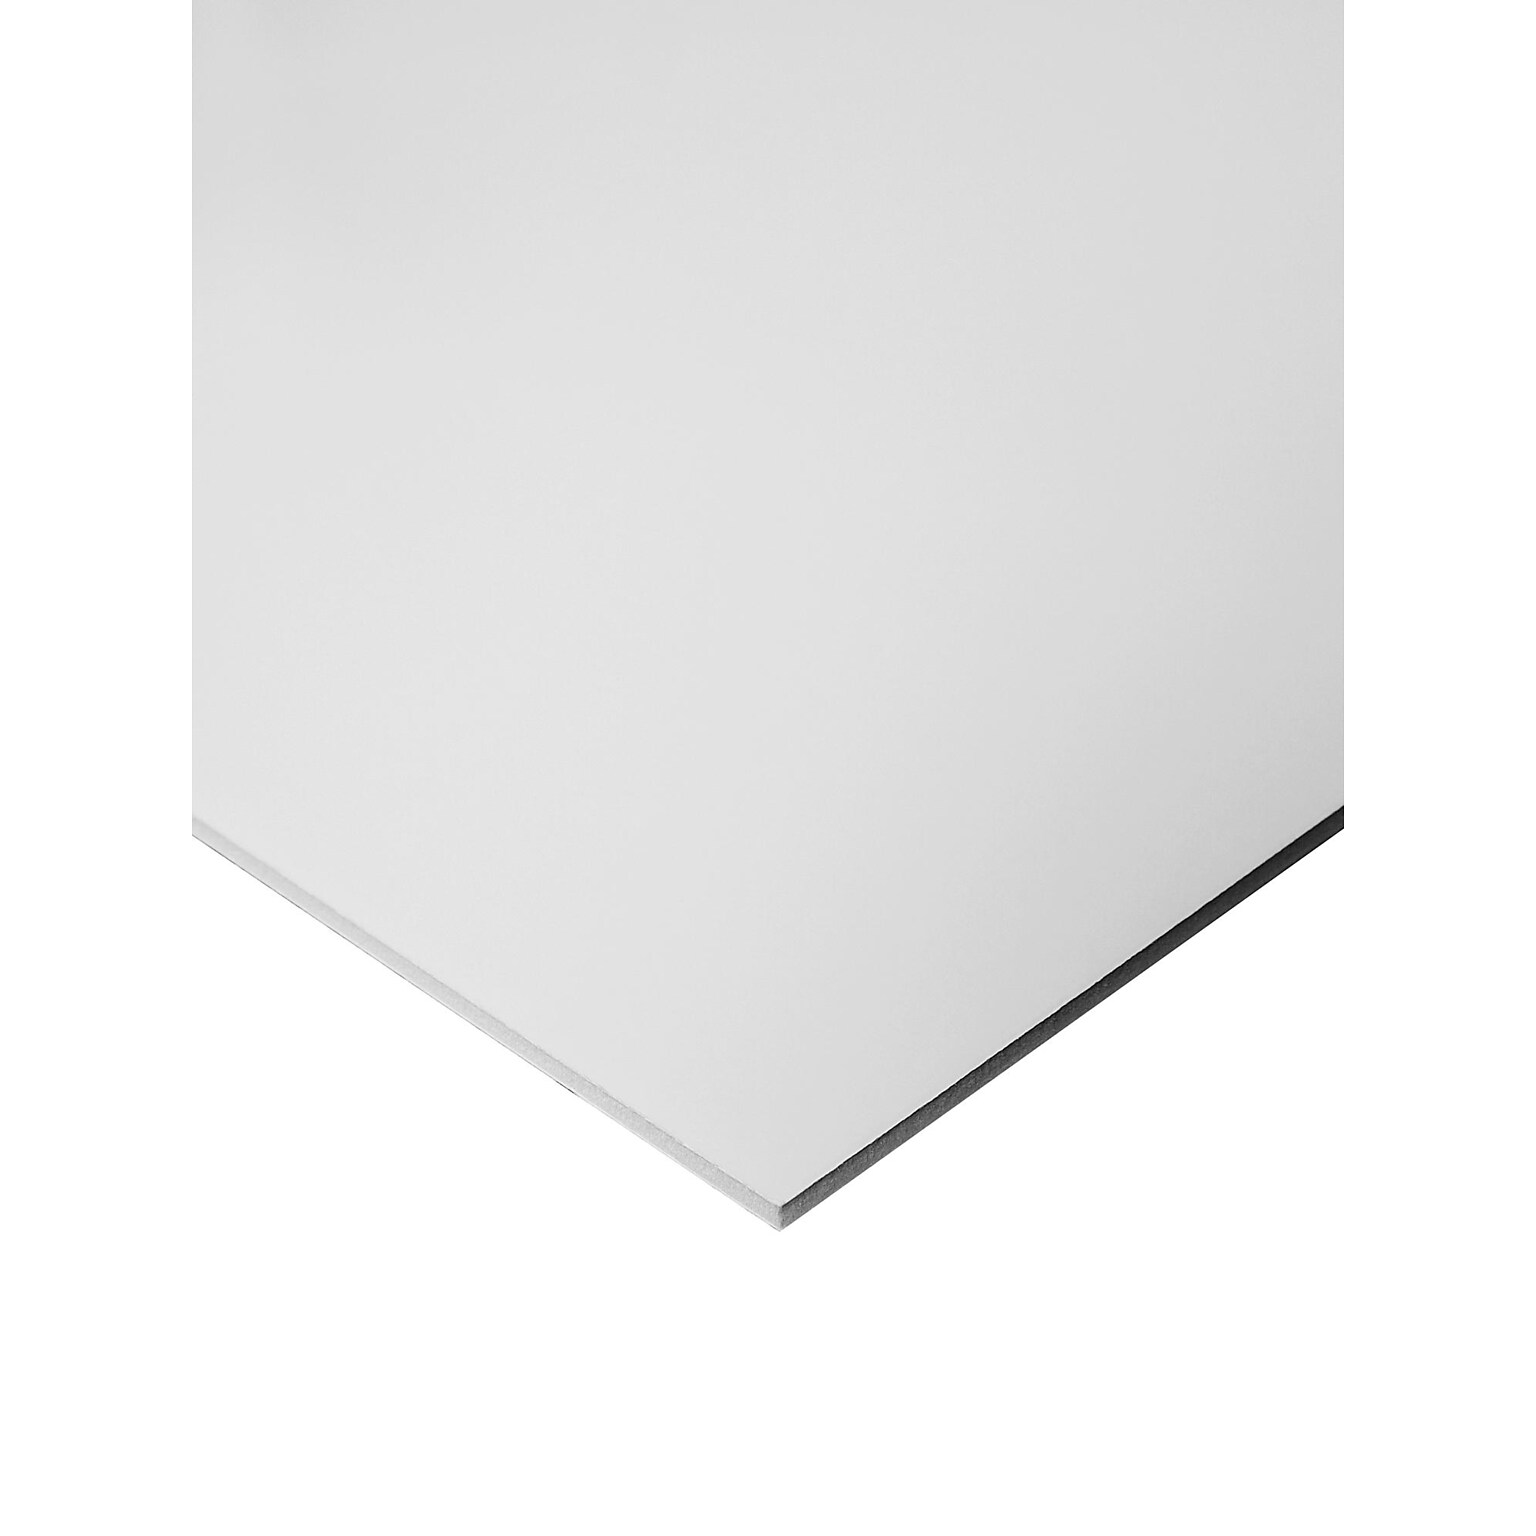 Crescent Heat Activated Fome-Cor Board, 3/16 x 24 x 36, White (11105-2436C)